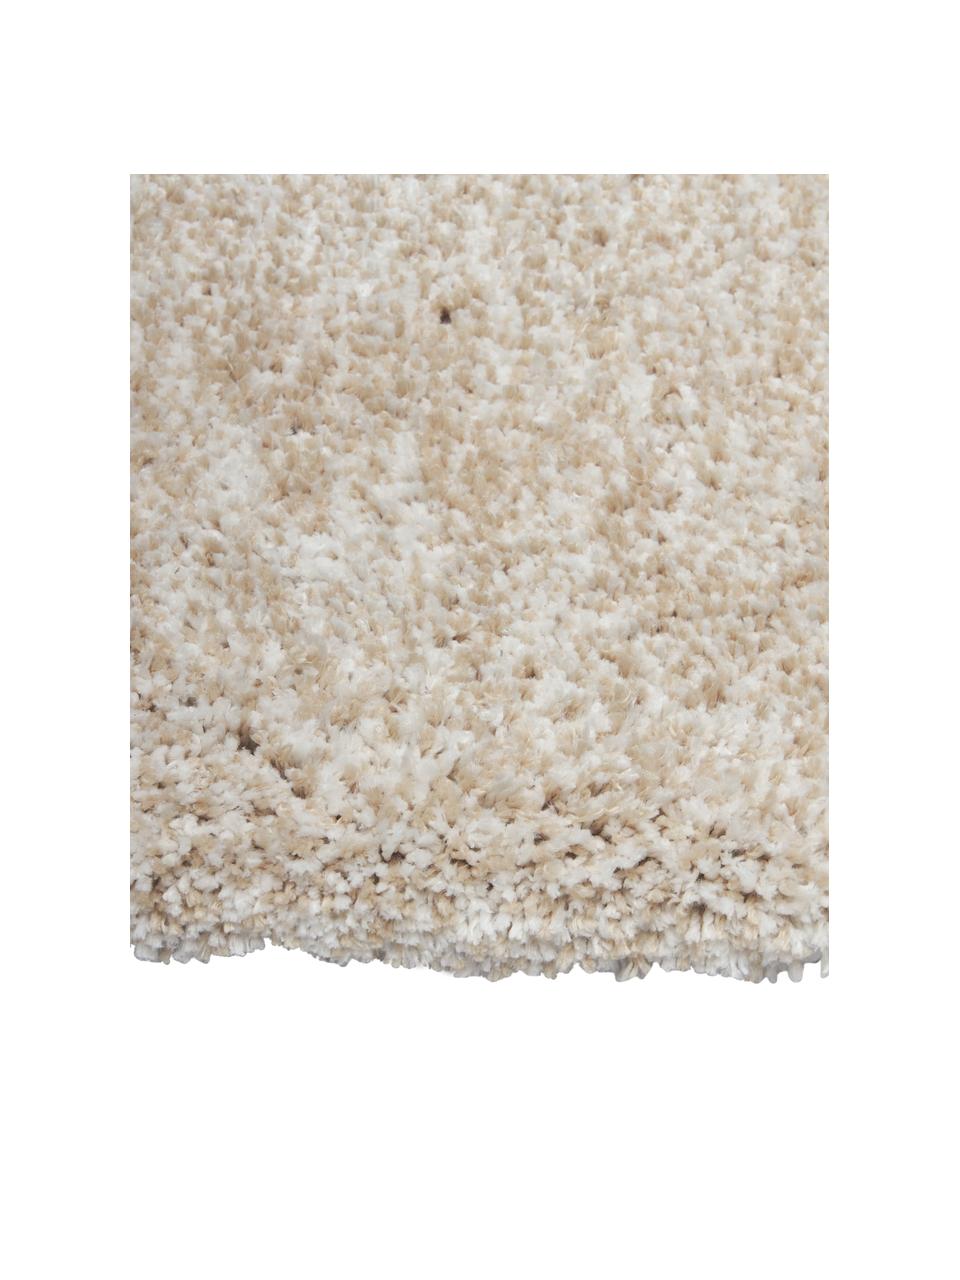 Flauschiger Melange Hochflor-Teppich Marsha, Flor: 100 % Polyester, Beige, B 80 x L 150 cm (Größe XS)